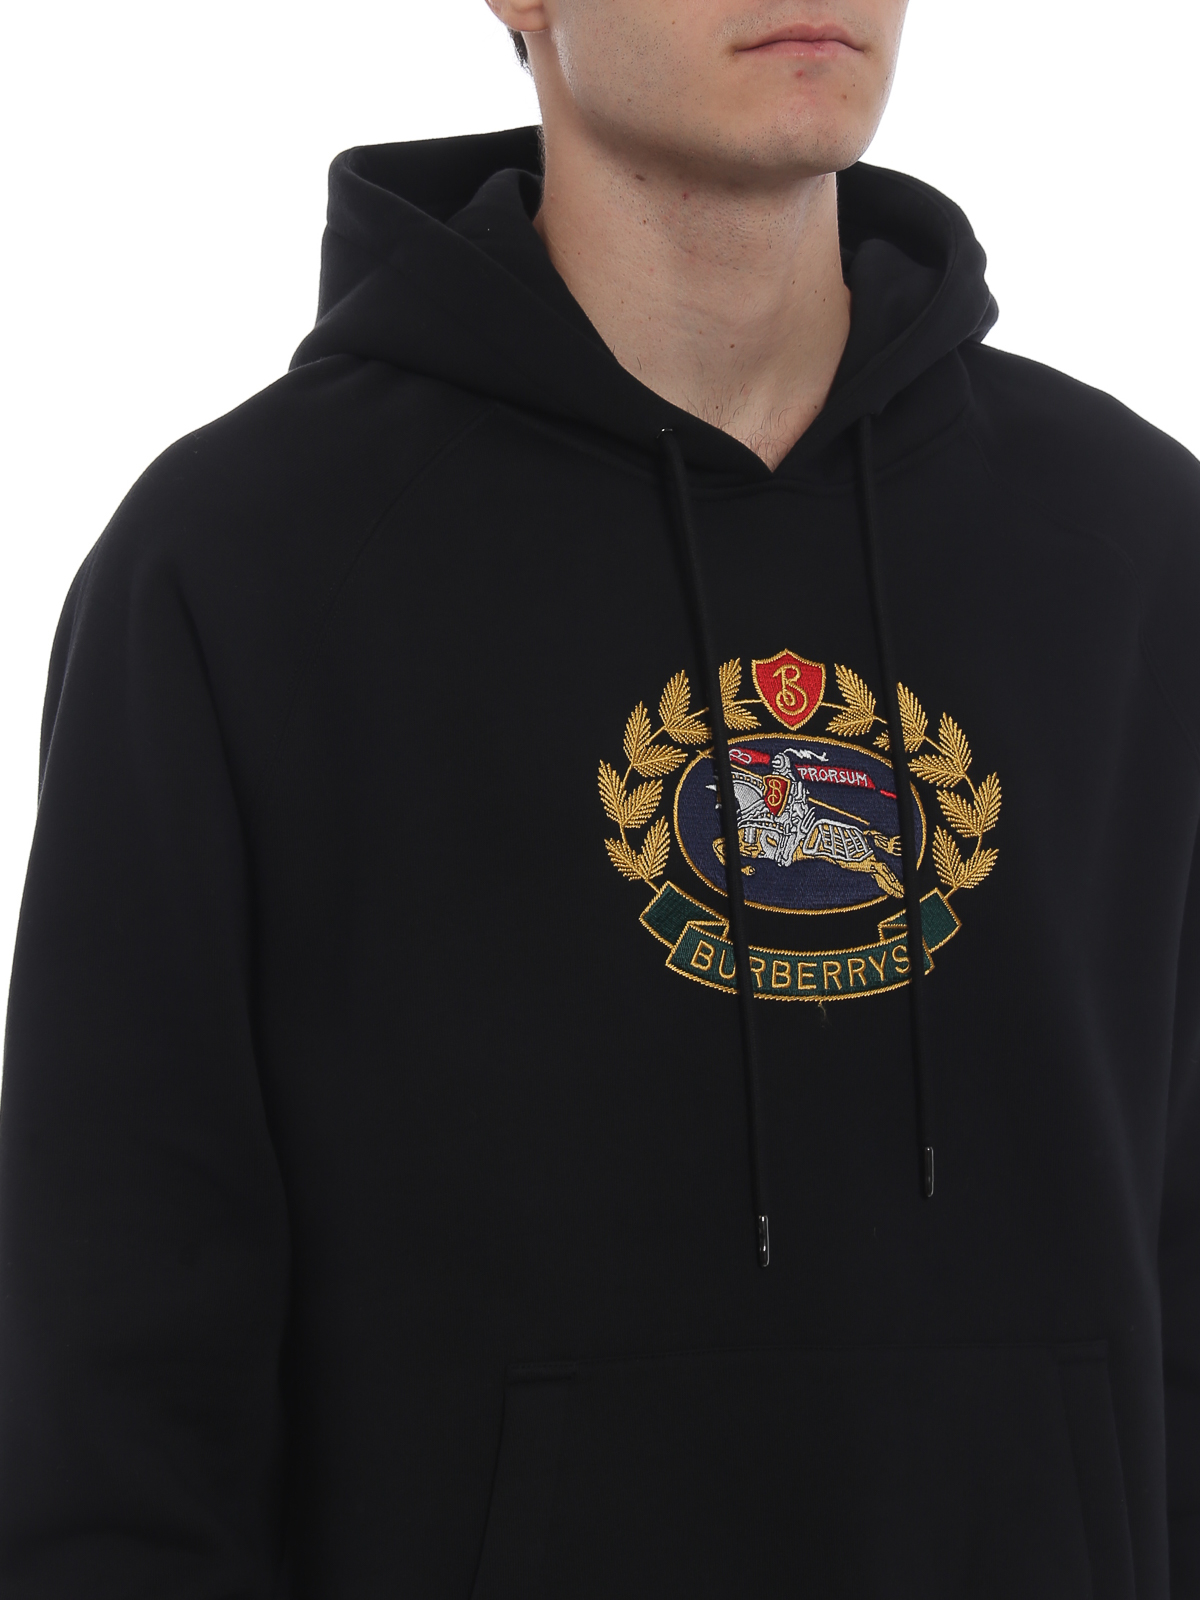 burberry hoodie kids online